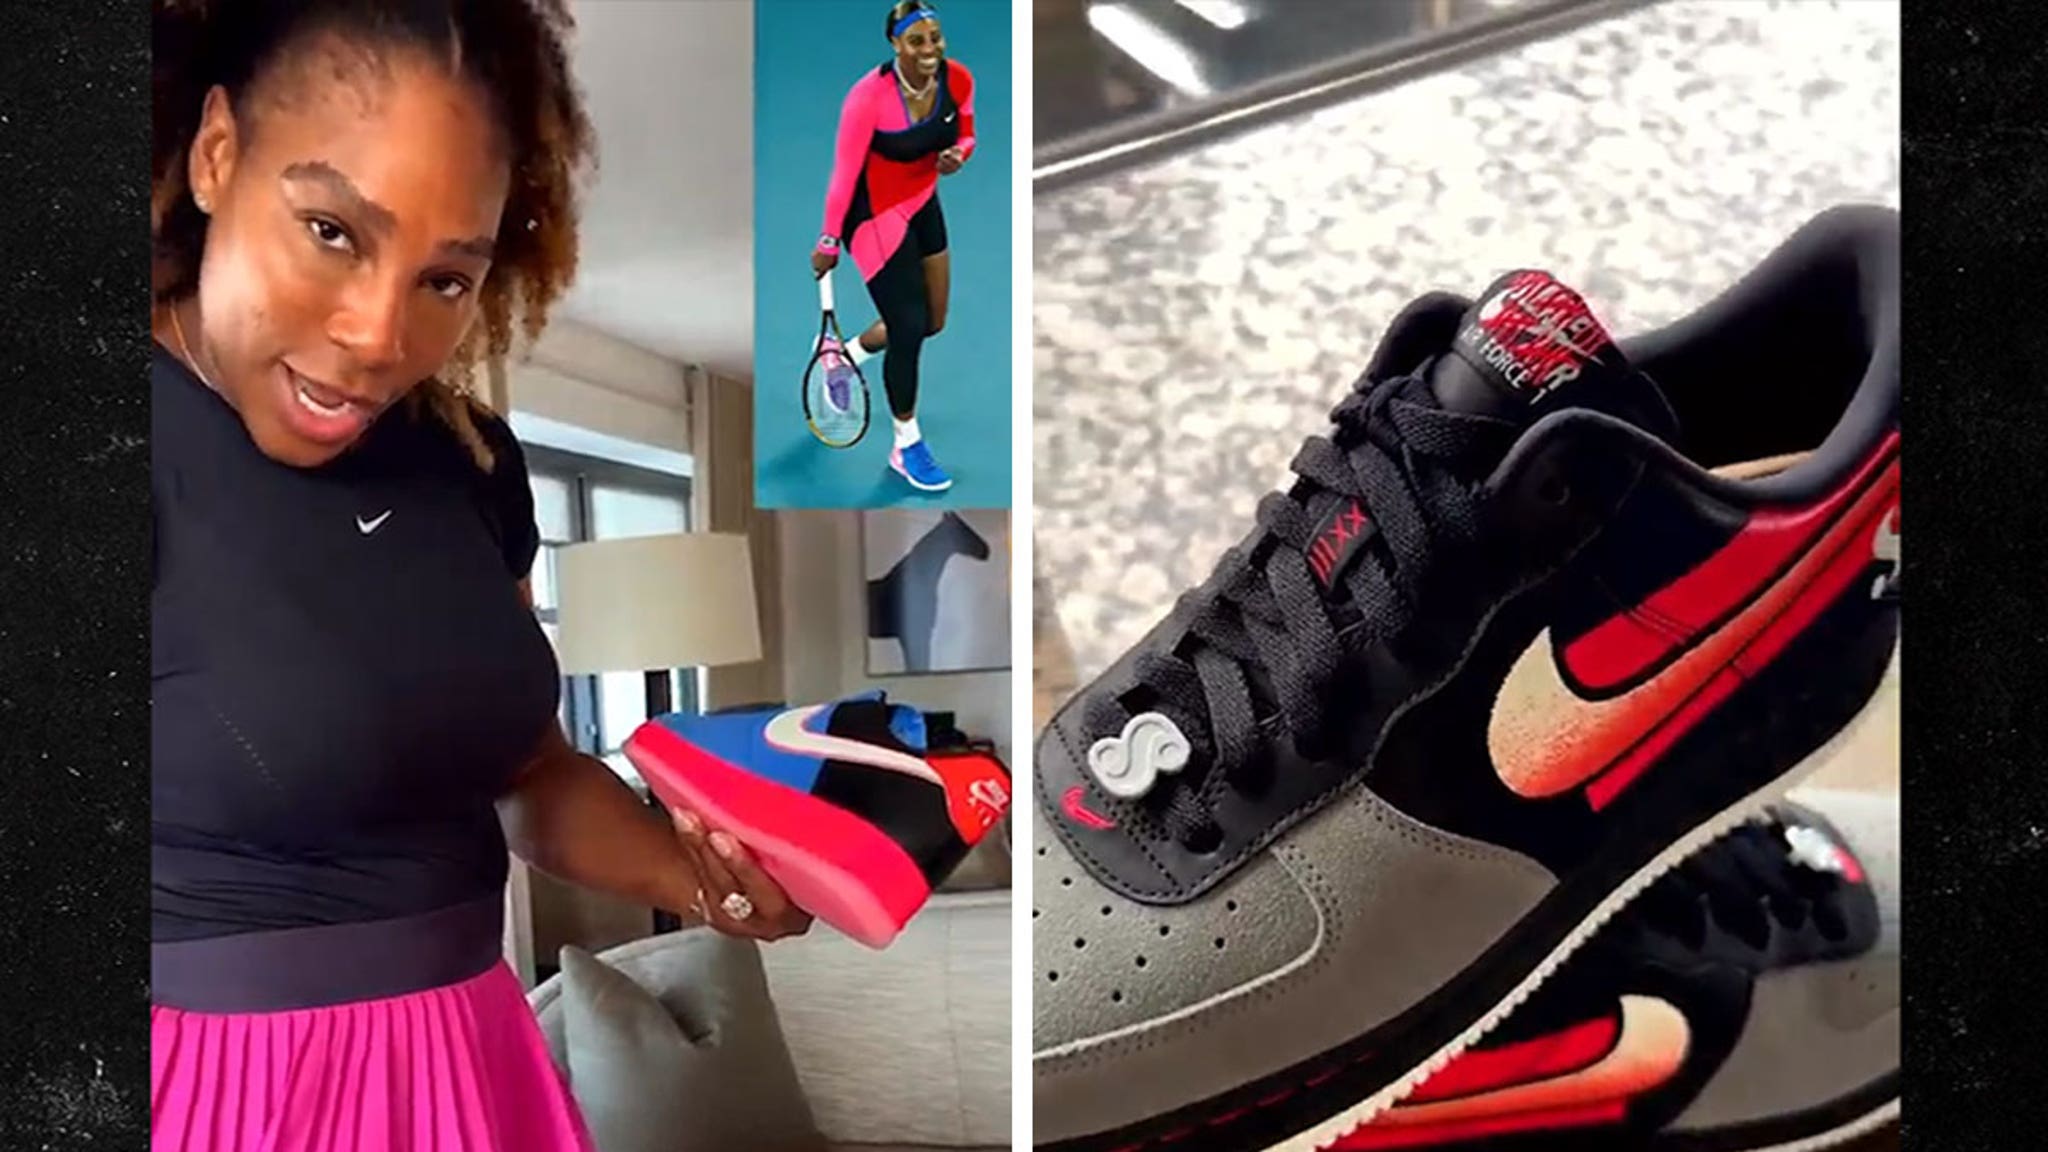 Meter Zonder hoofd modus Serena Williams Gets Virgil Abloh-Inspired Kicks From Nike During U.S. Open